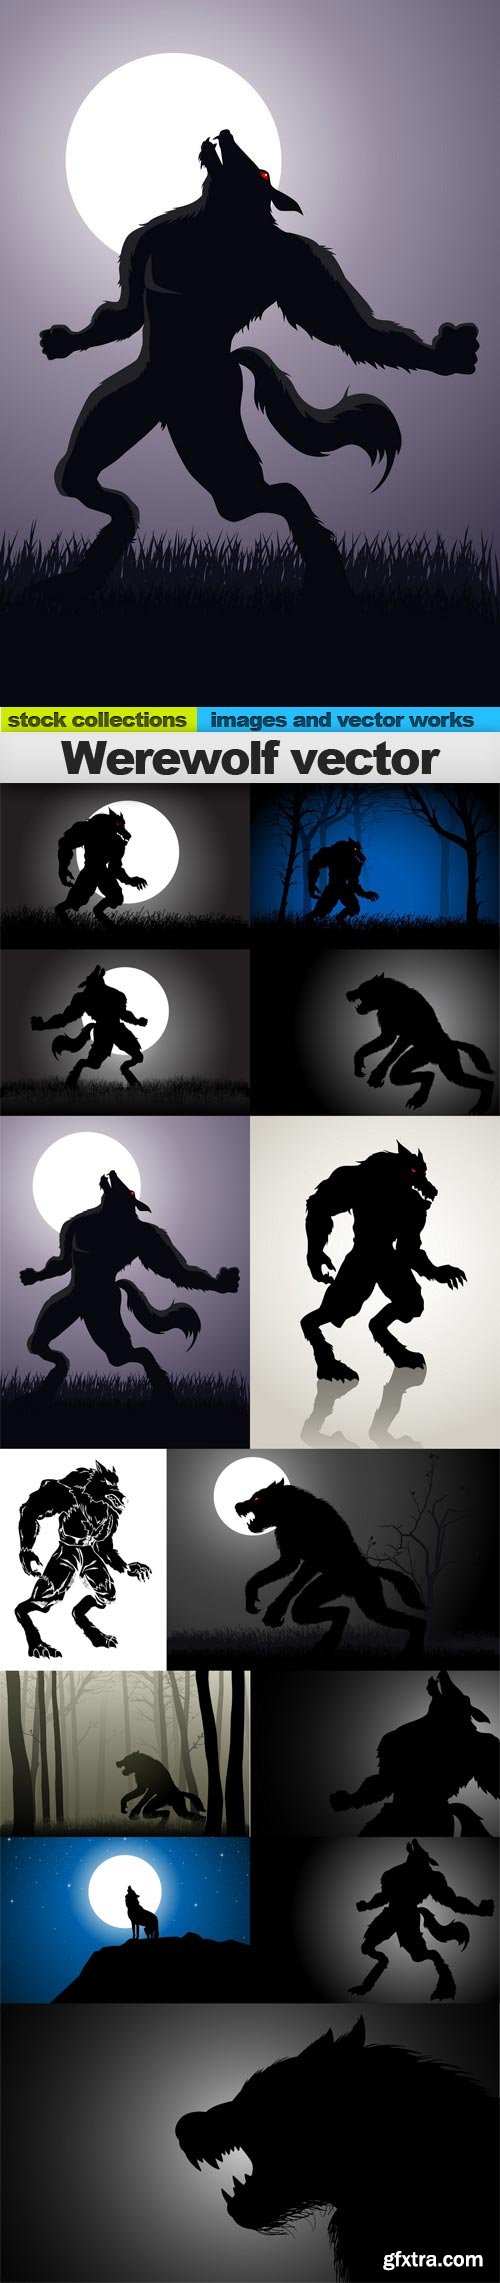 Werewolf vector, 13 x EPS